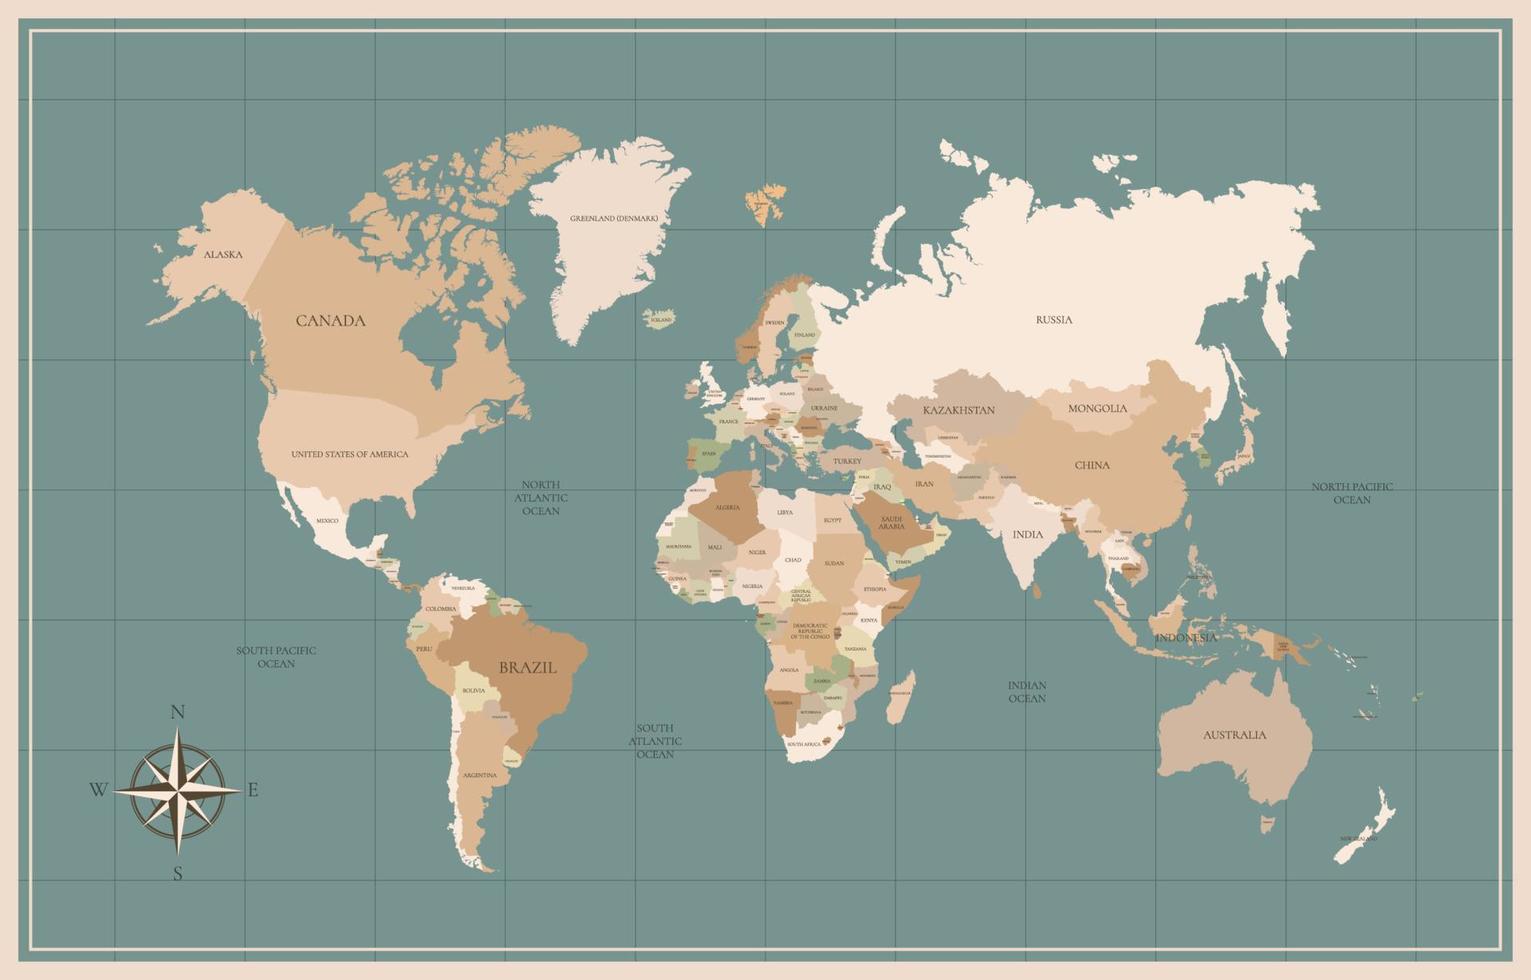 wereld kaart met land namen vector